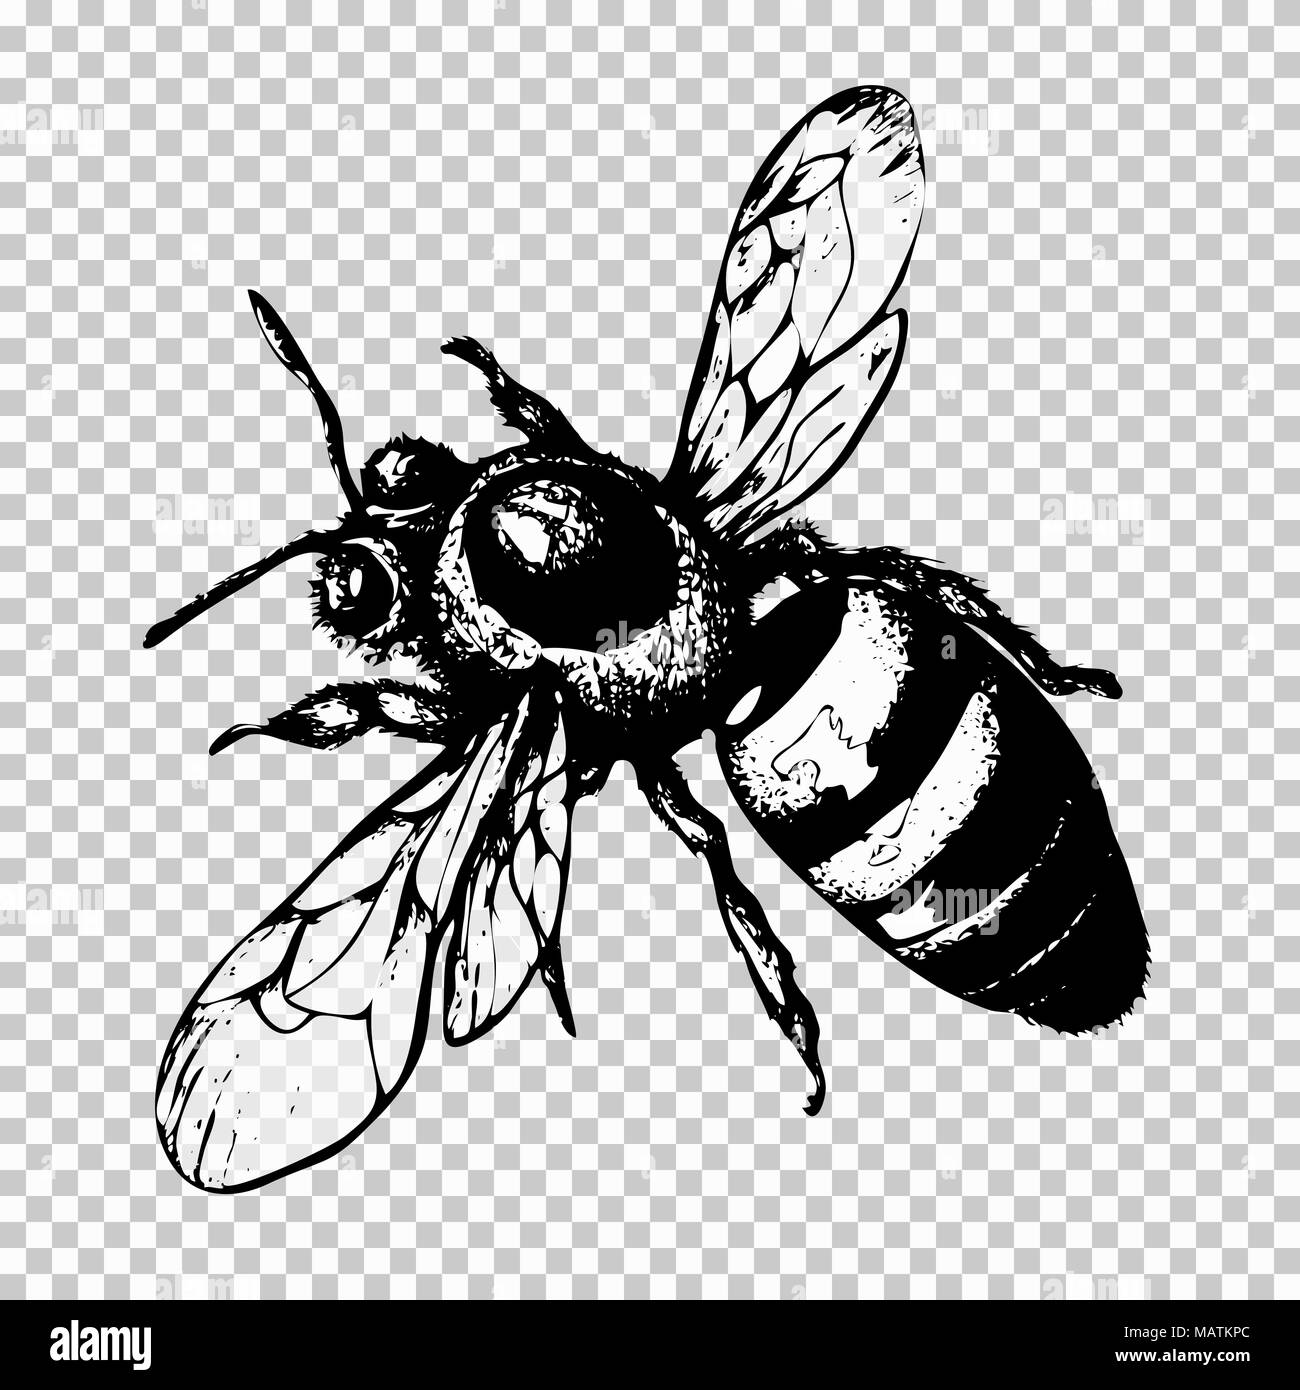 Dibujo a mano de la abeja, insecto boceto en negro sobre un fondo transparente. Ilustración vectorial Ilustración del Vector